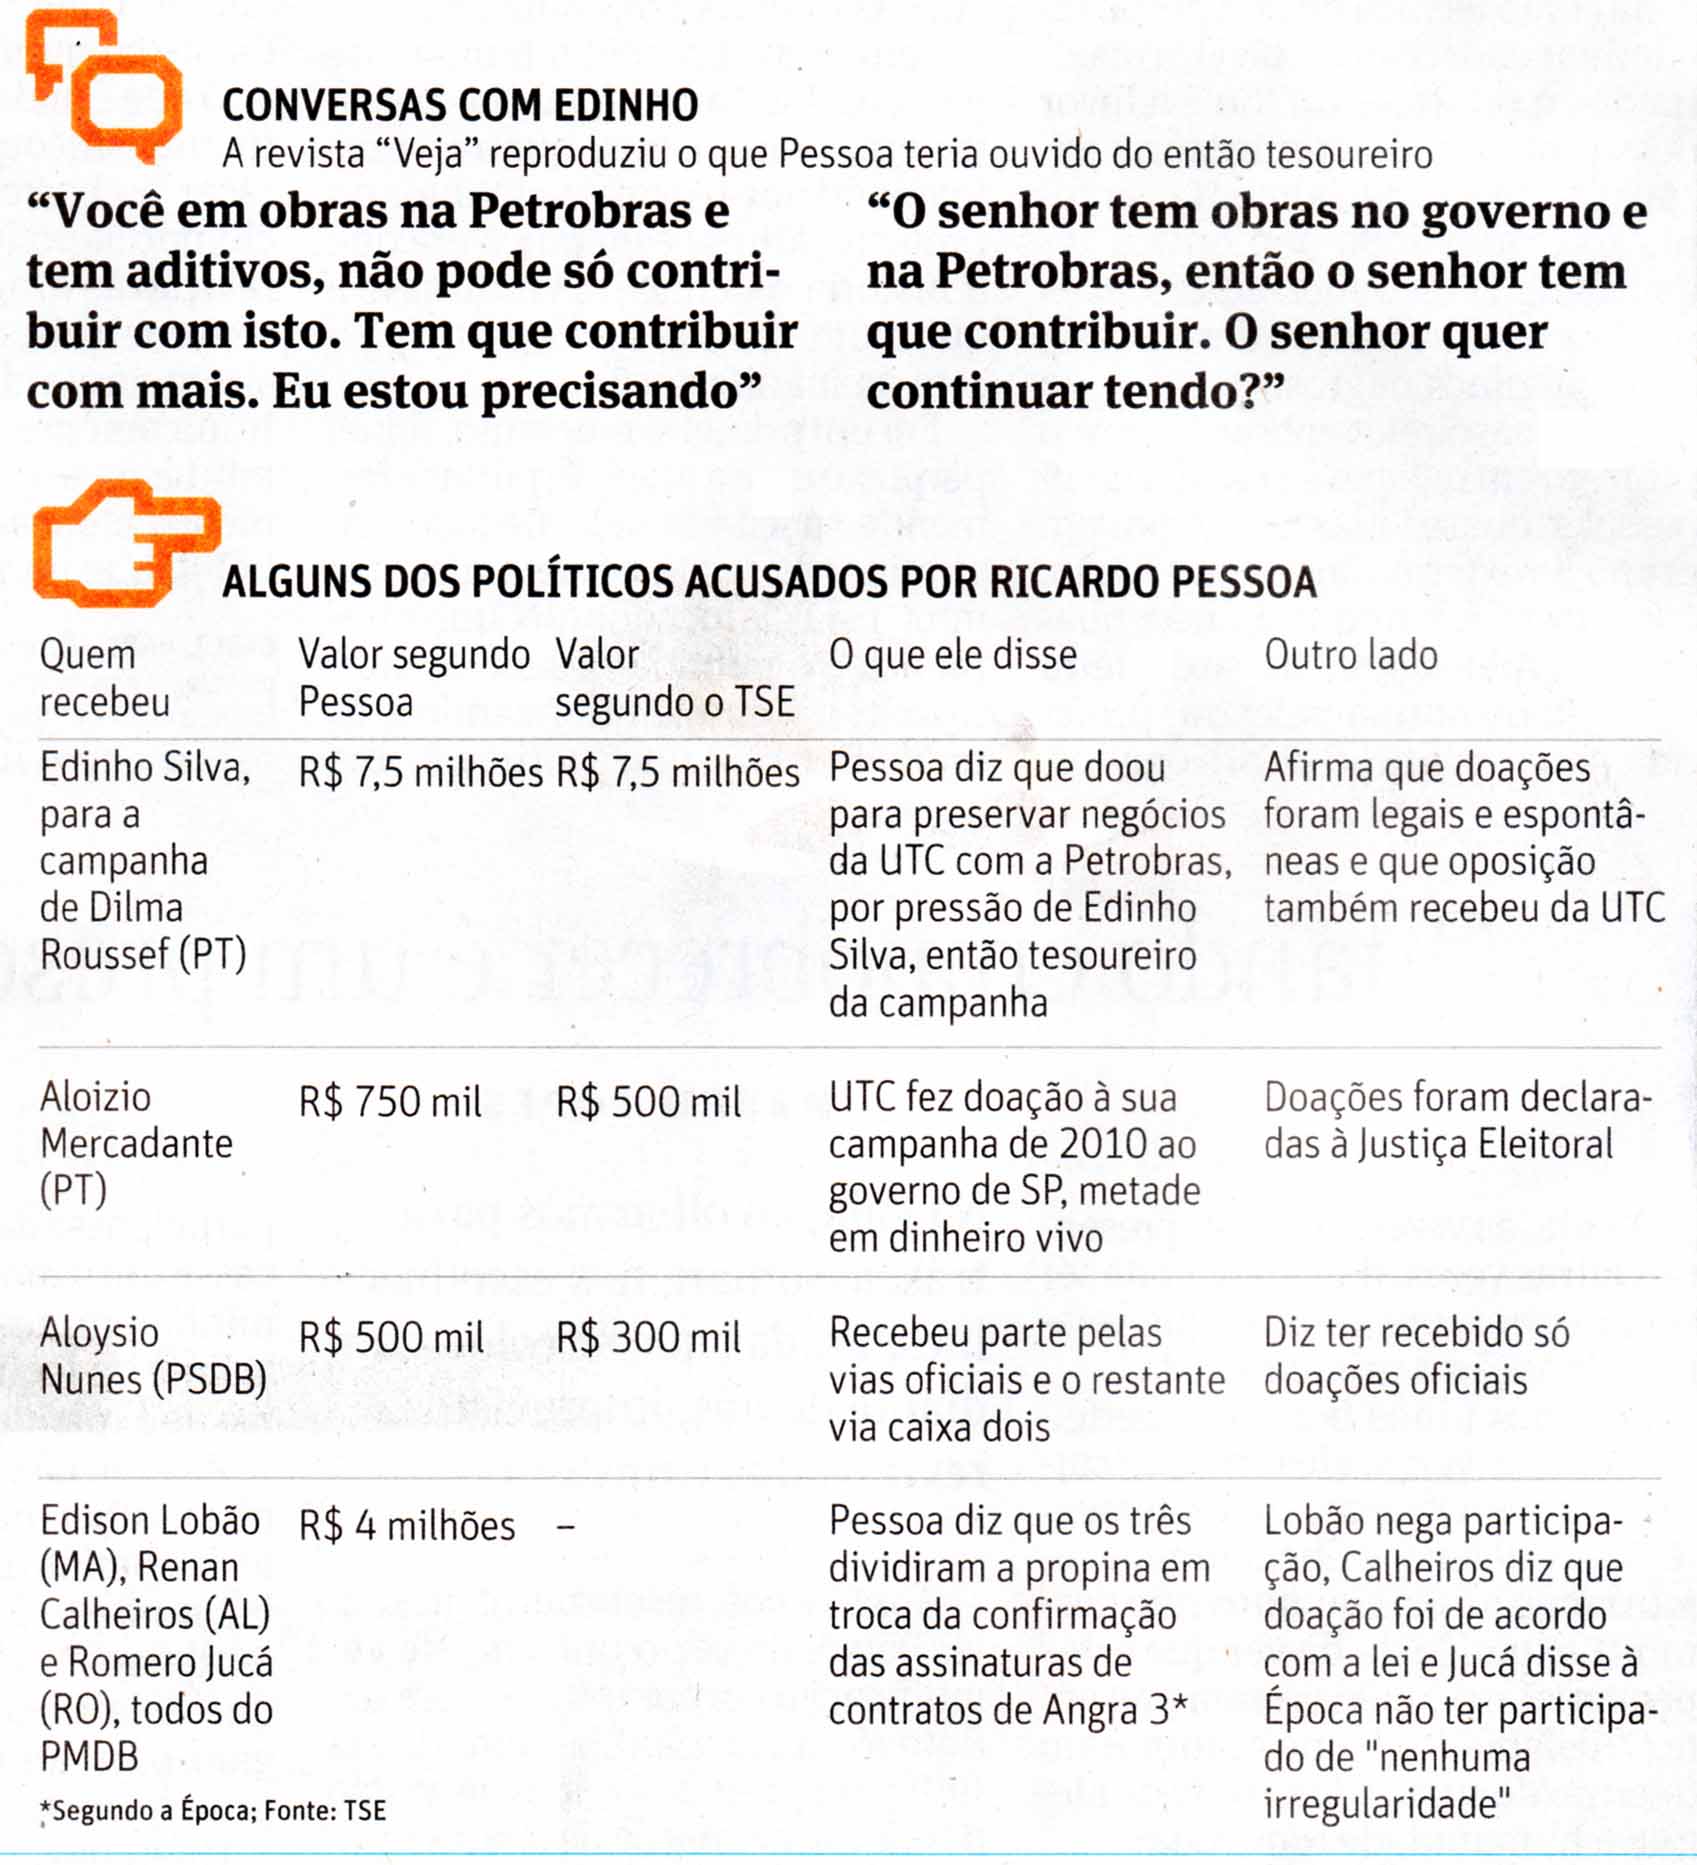 Folha de So Paulo - 07/09/15 - PETTRTTOLO: Ricardo Pessoa acusa polticos - Editoria de Arte